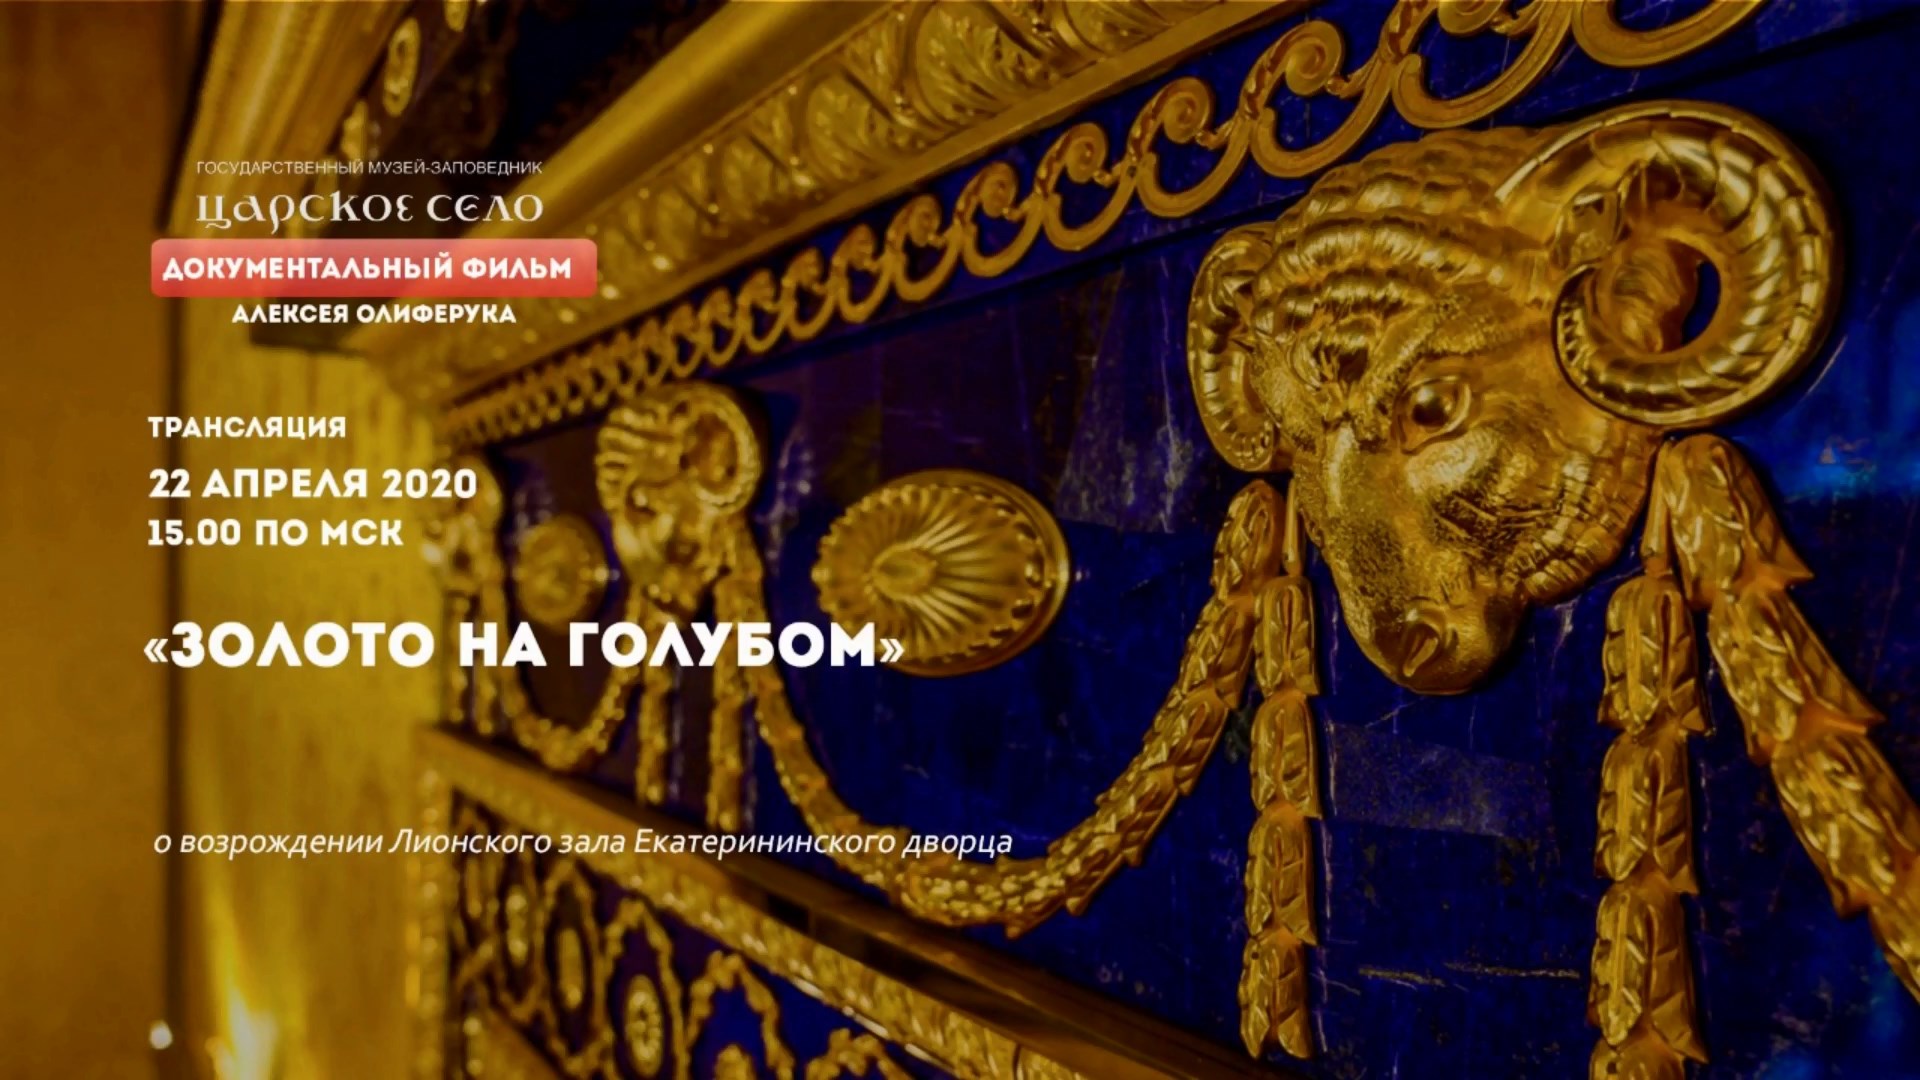 «Золото на голубом»: возрождение Лионского зала |Онлайн-трансляция (22 апреля 2020)